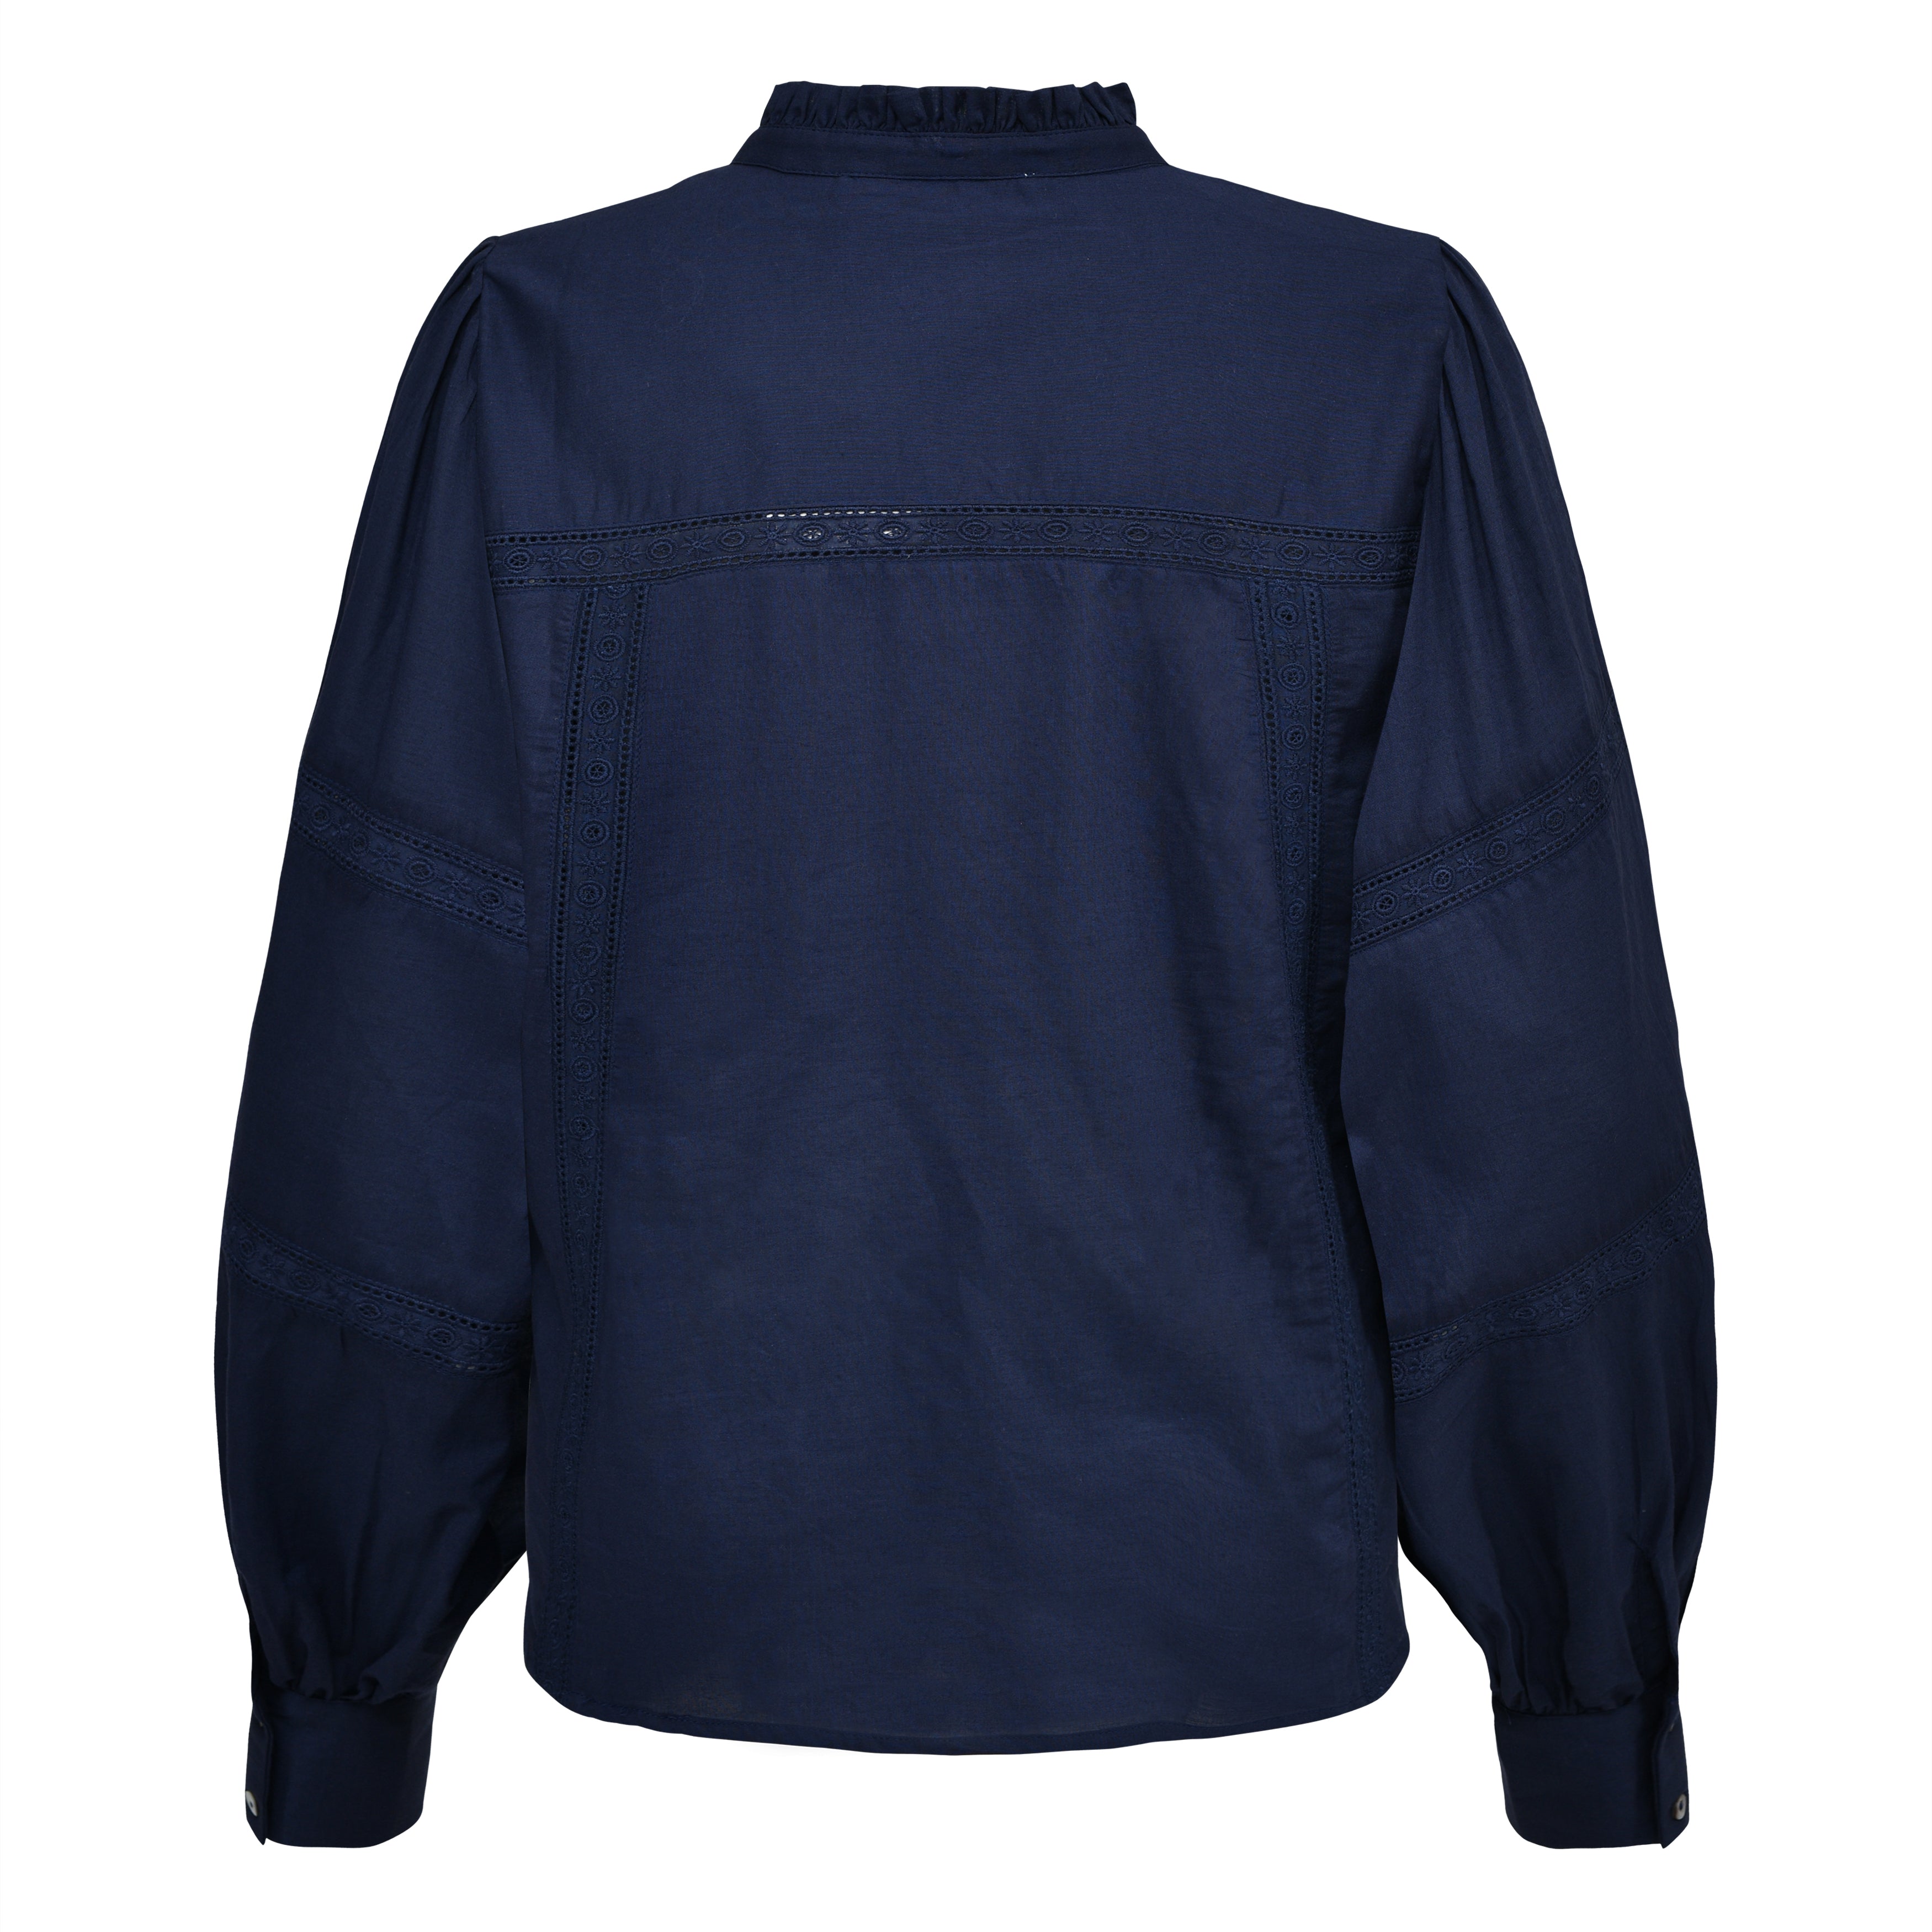 sofie-schnoor-night-blue-0s233284-shirt